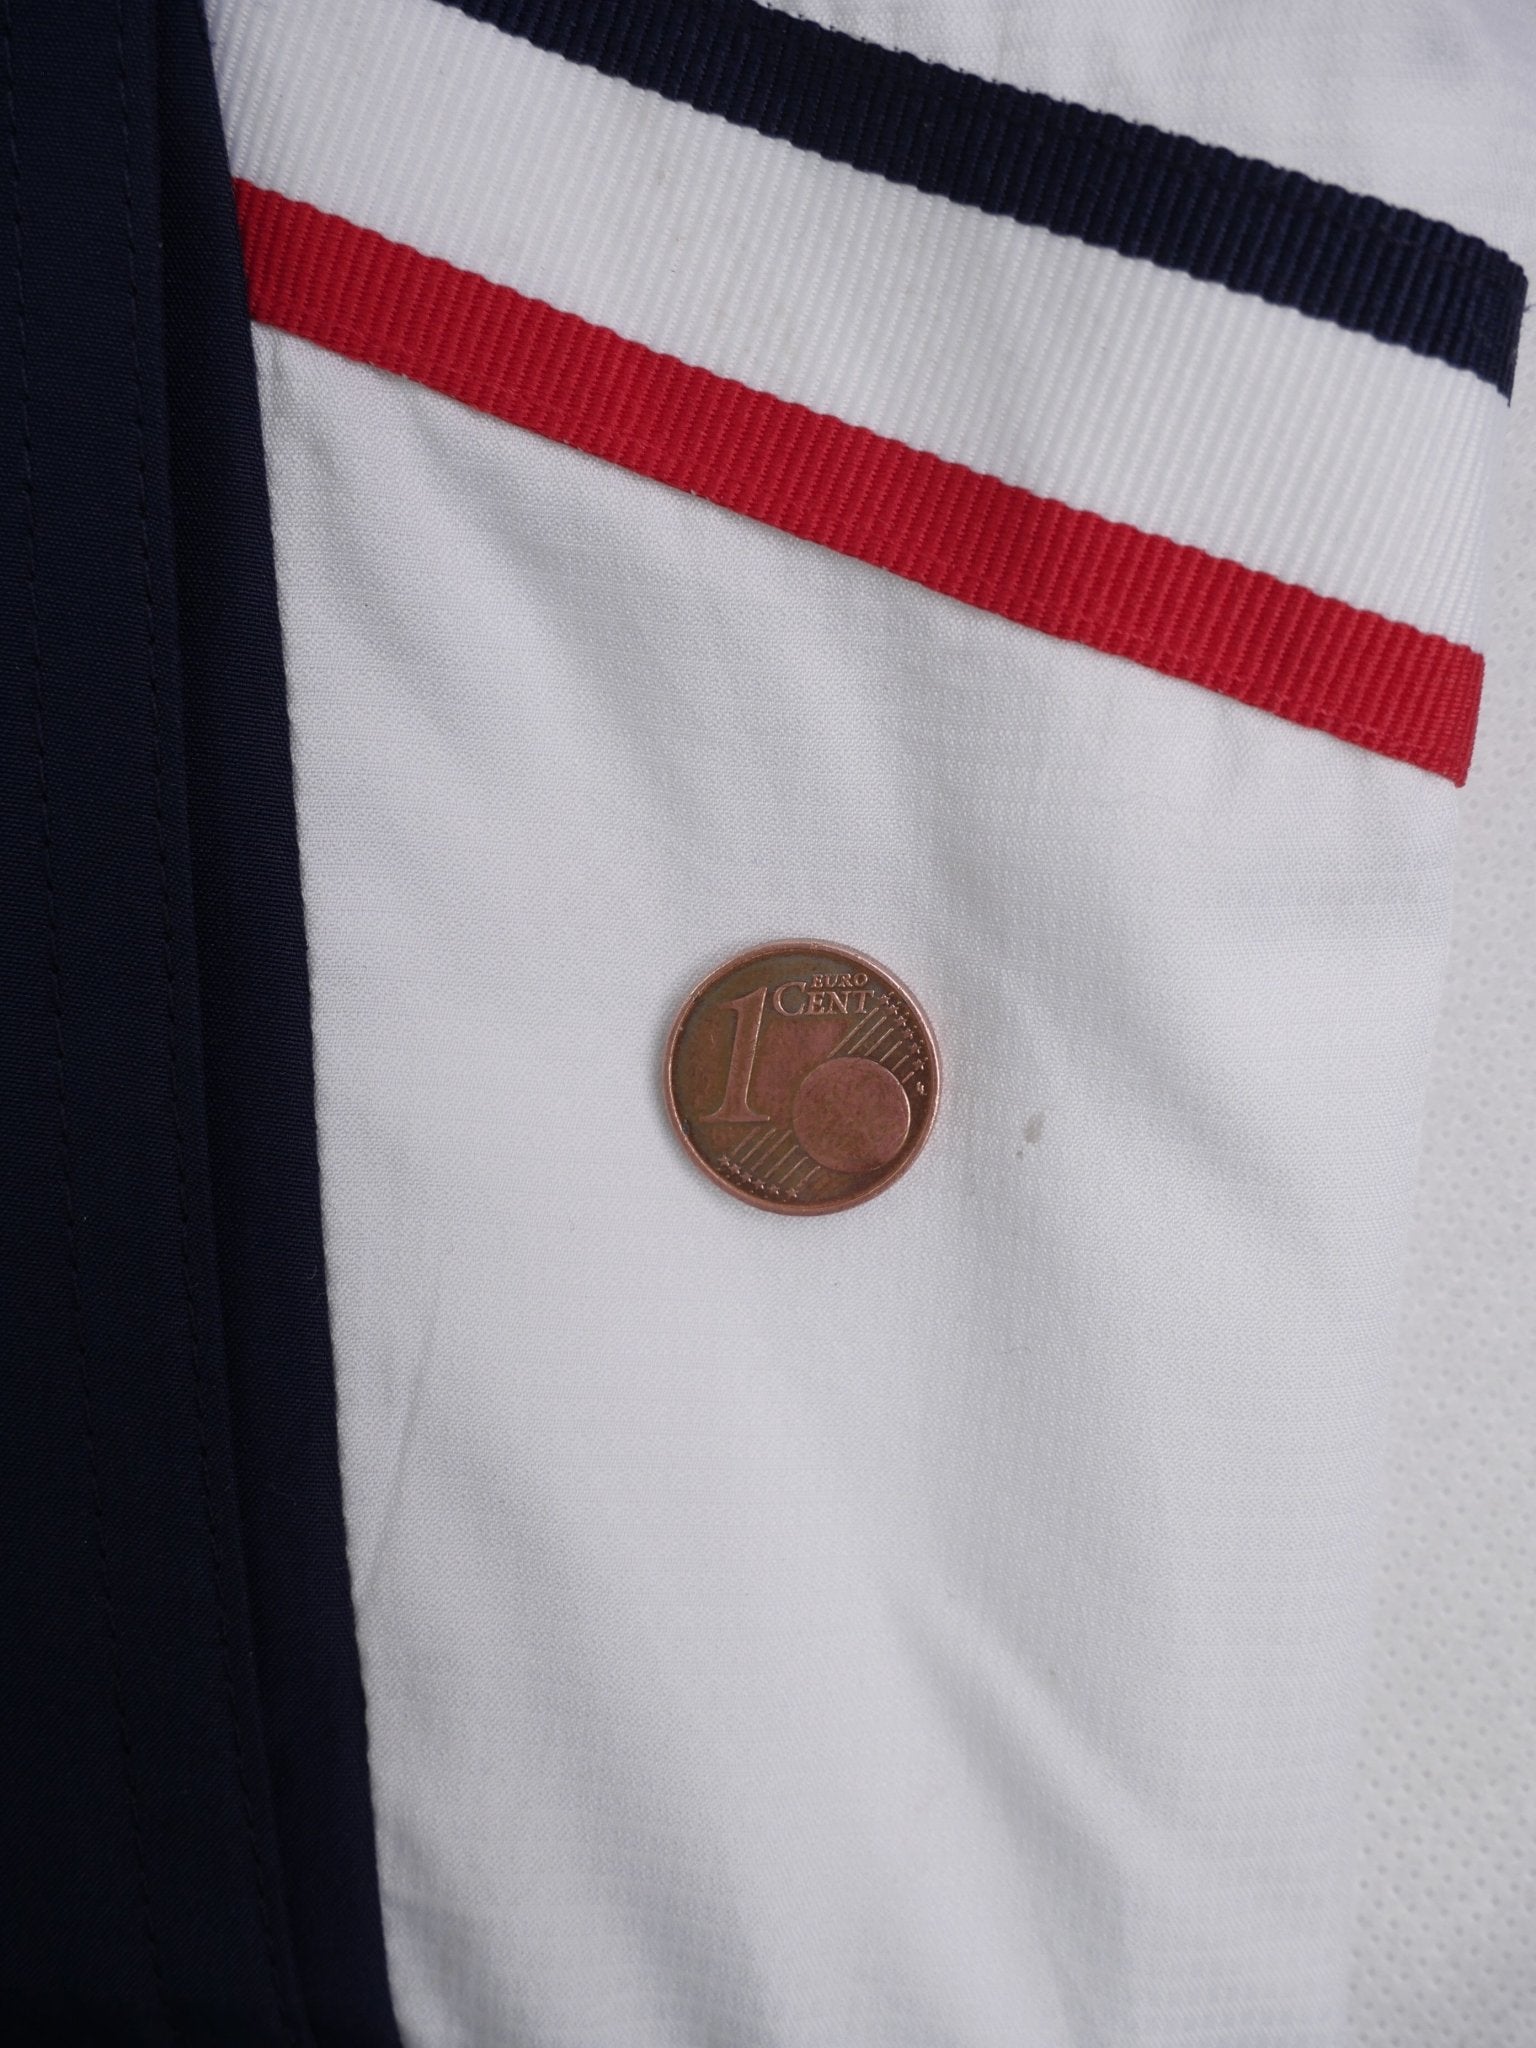 Adidas embroidered Logo 'Deutscher Fussball Bund' Soccer white Track Jacket - Peeces